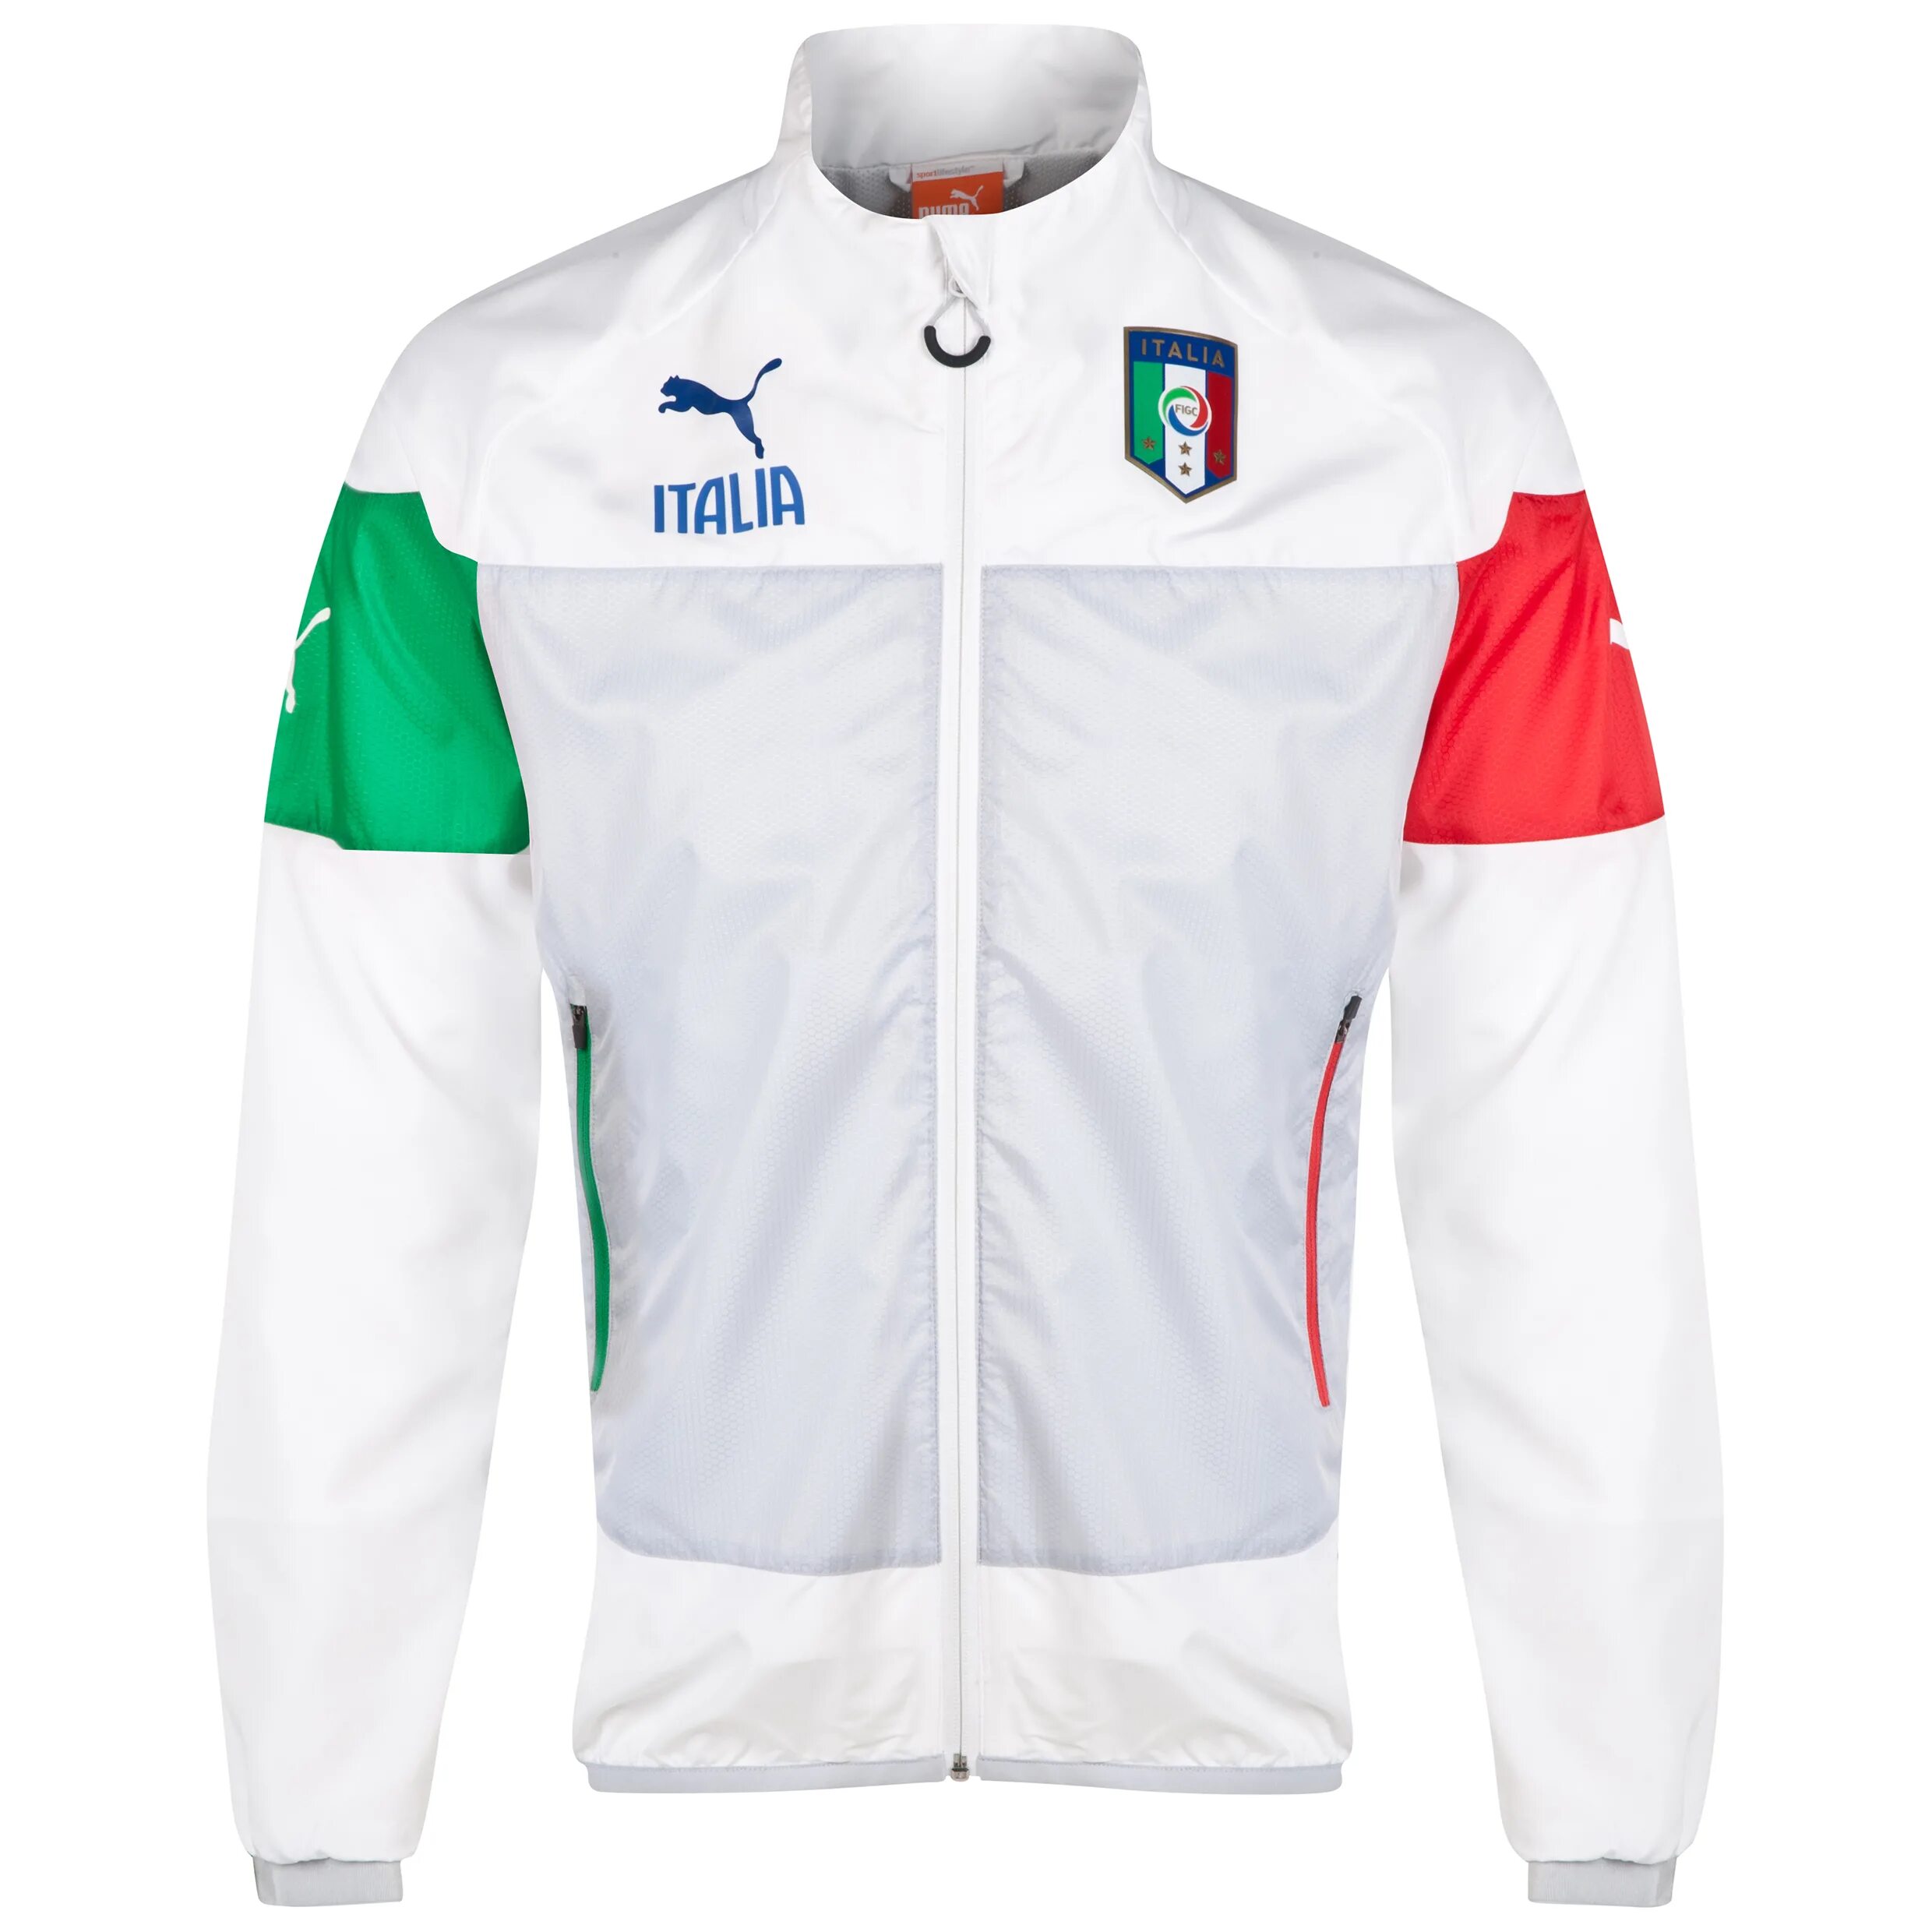 Спортивный костюм италия. Puma Italia Jacket. Олимпийка мужская Пума сборной Италии. Puma Italia куртка. Спортивный костюм Пума сборная Италии.